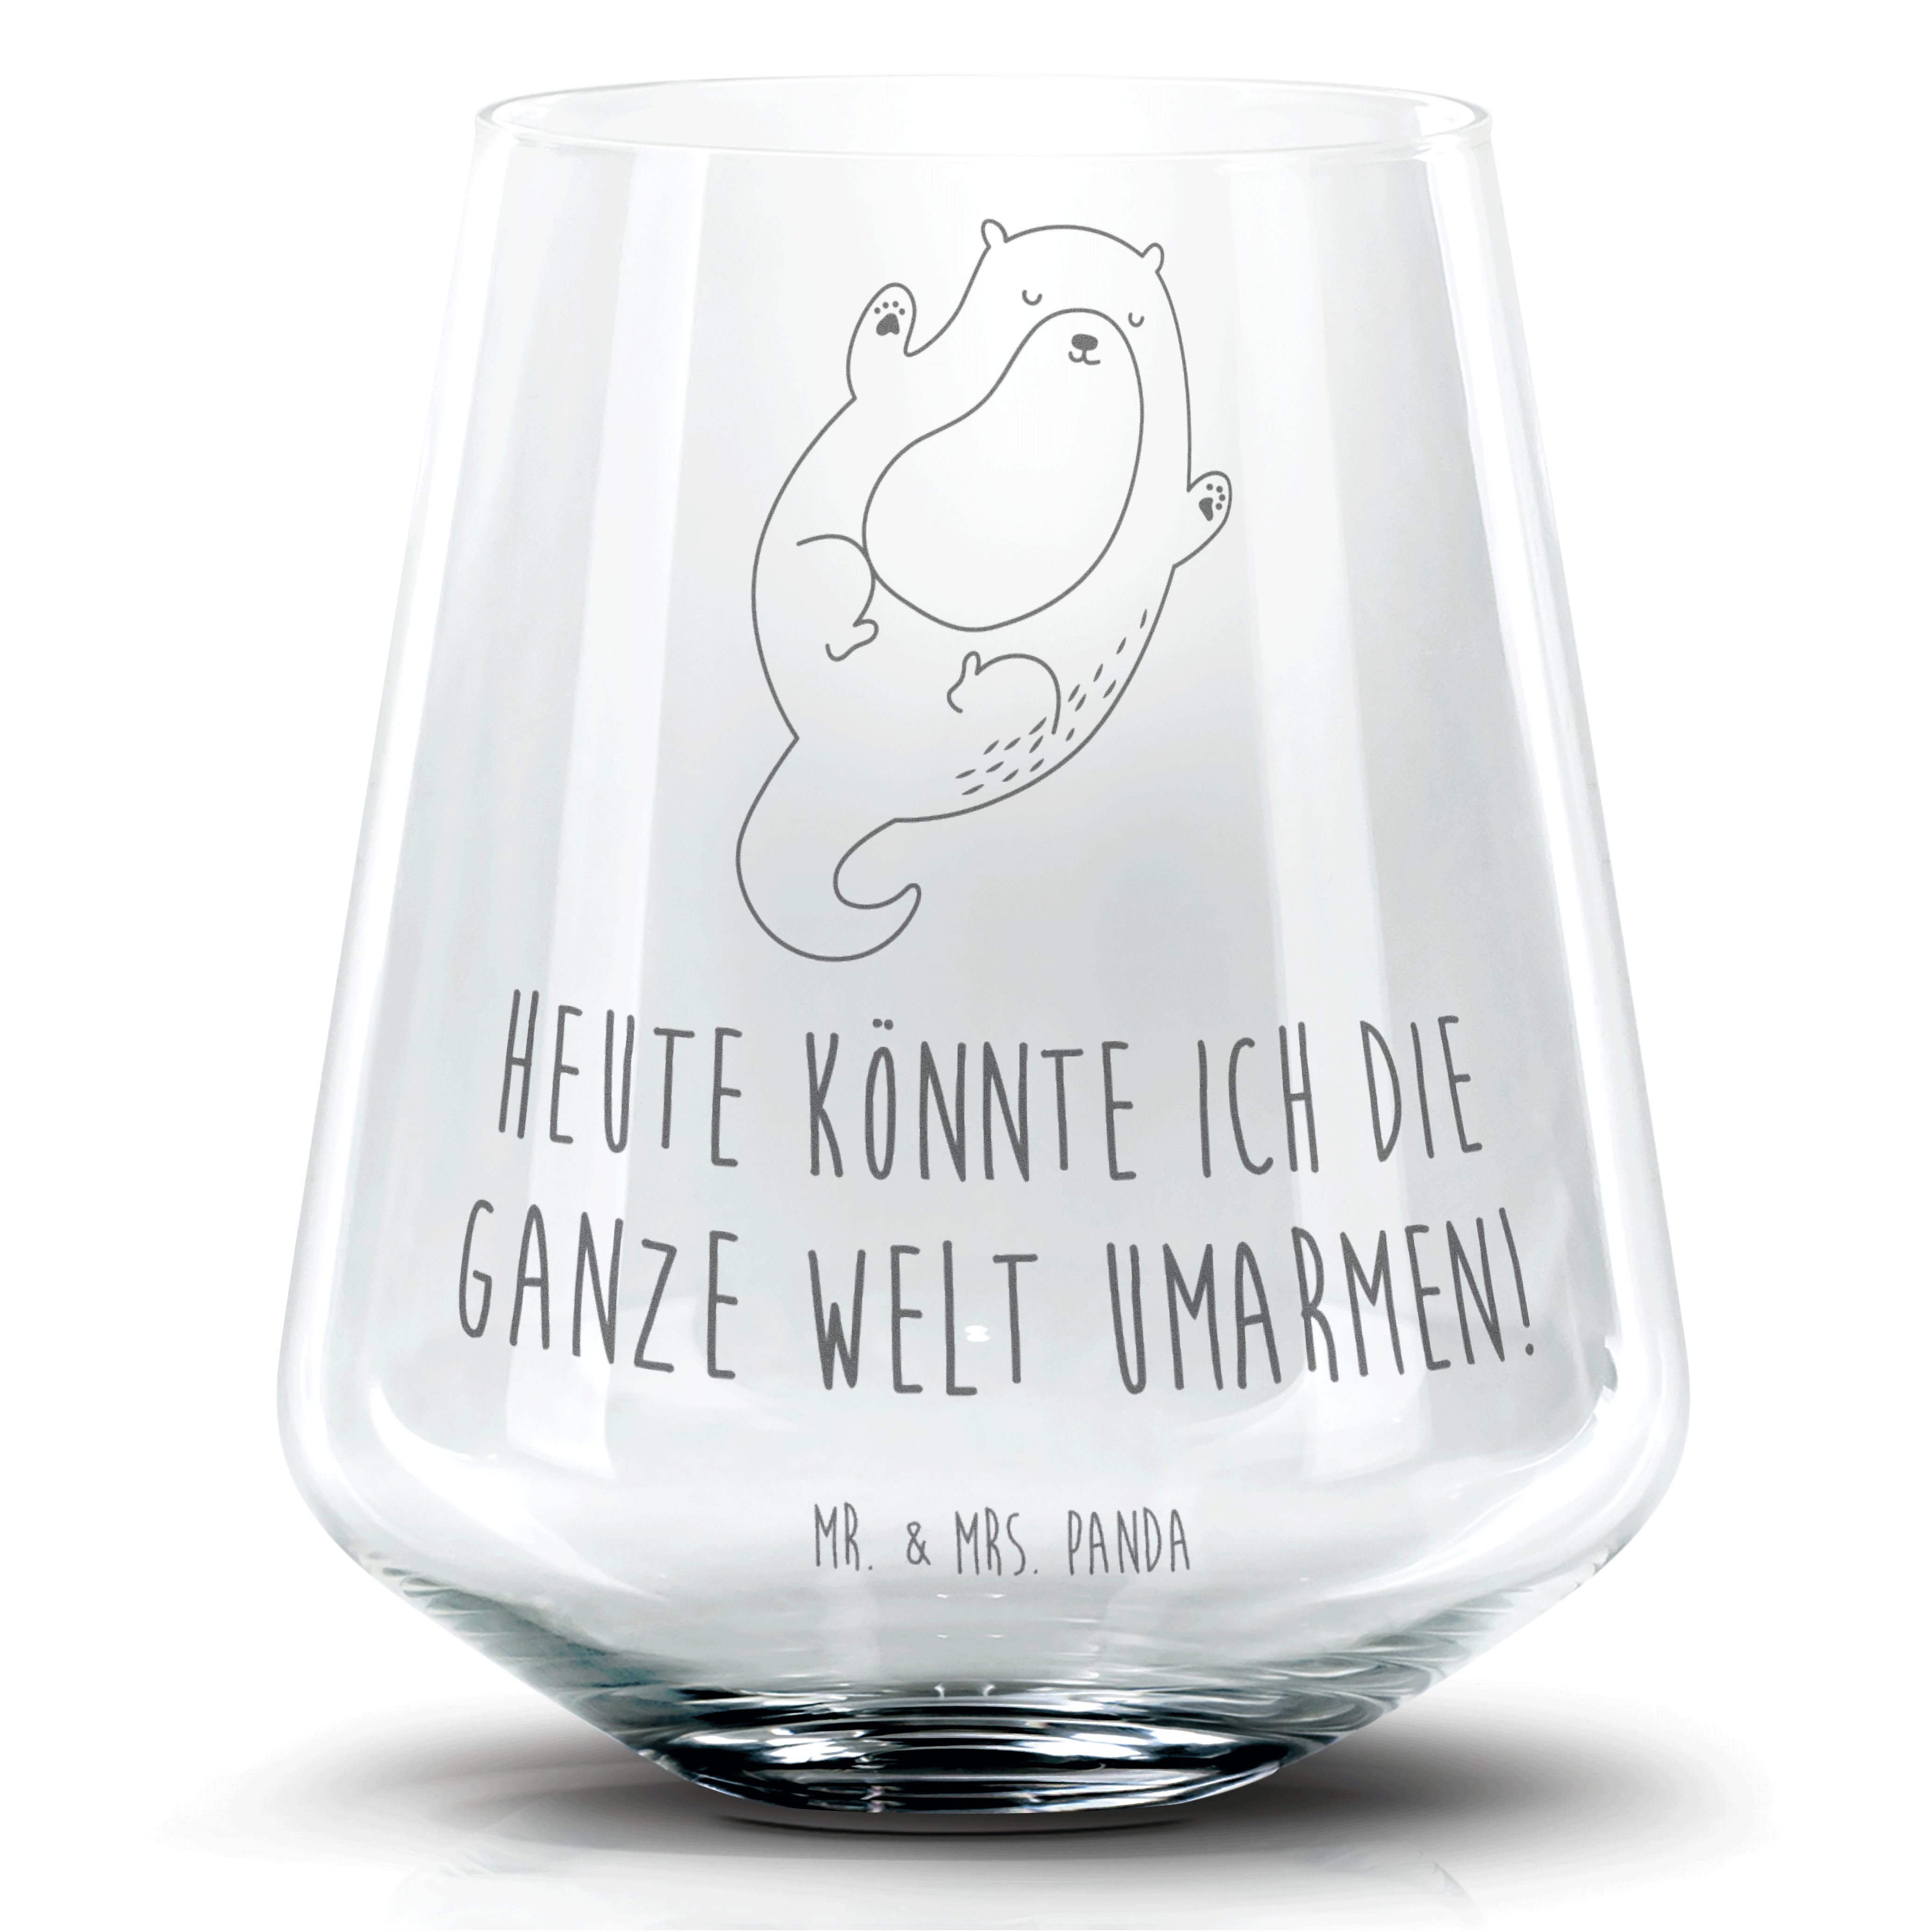 Mr. & Mrs. Panda Cocktailglas Otter Umarmen - Transparent - Geschenk, Cocktail Glas mit Sprüchen, C, Premium Glas, Einzigartige Gravur